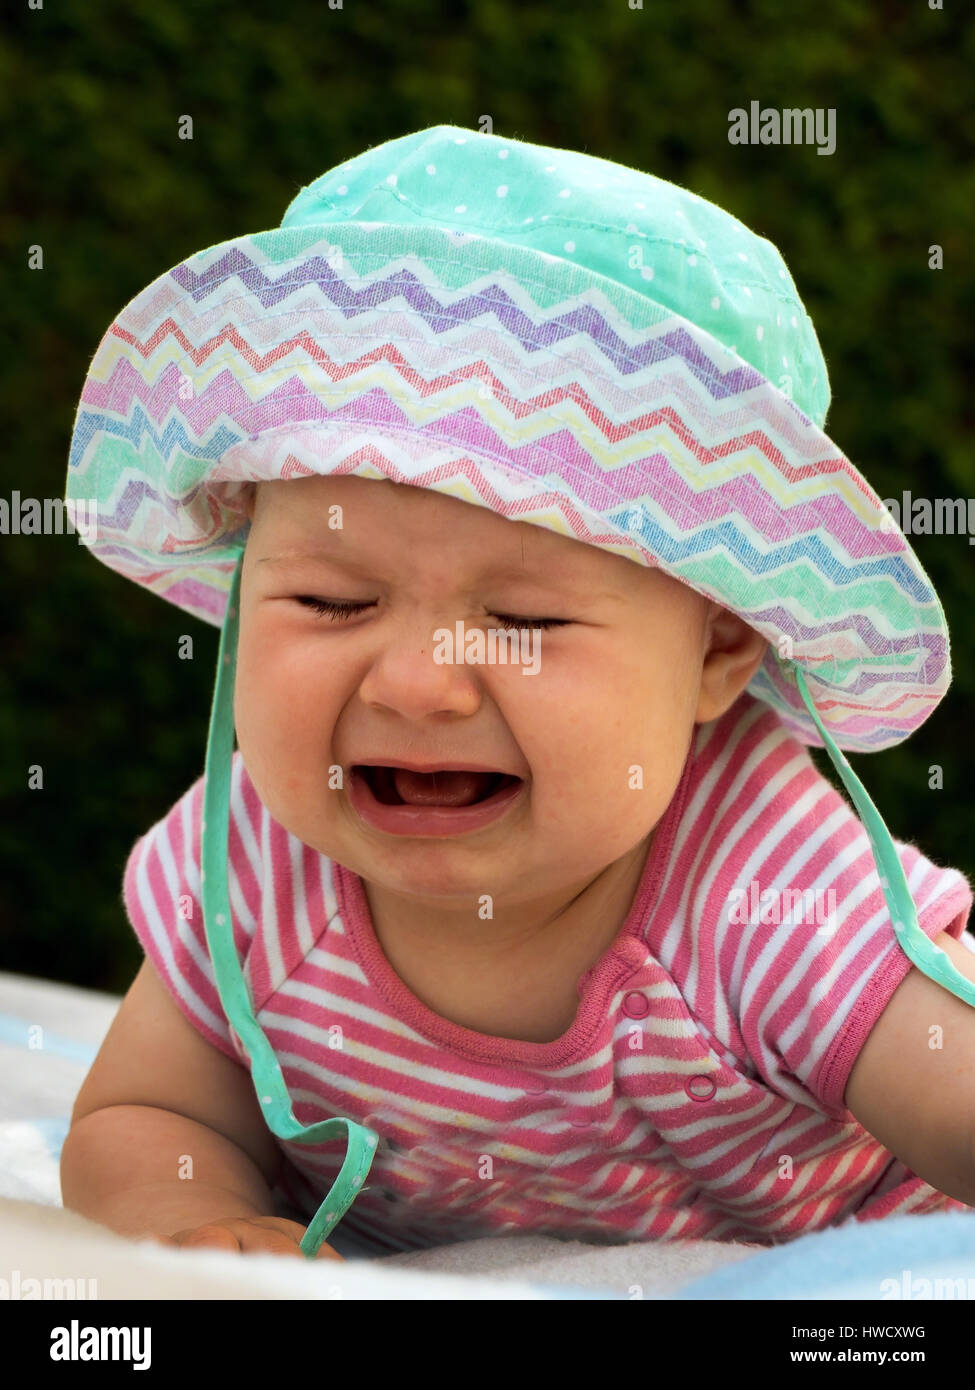 Gridando bambino giace su un prato ed è triste, Weinendes Baby liegt auf einer Wiese und traurig ist Foto Stock